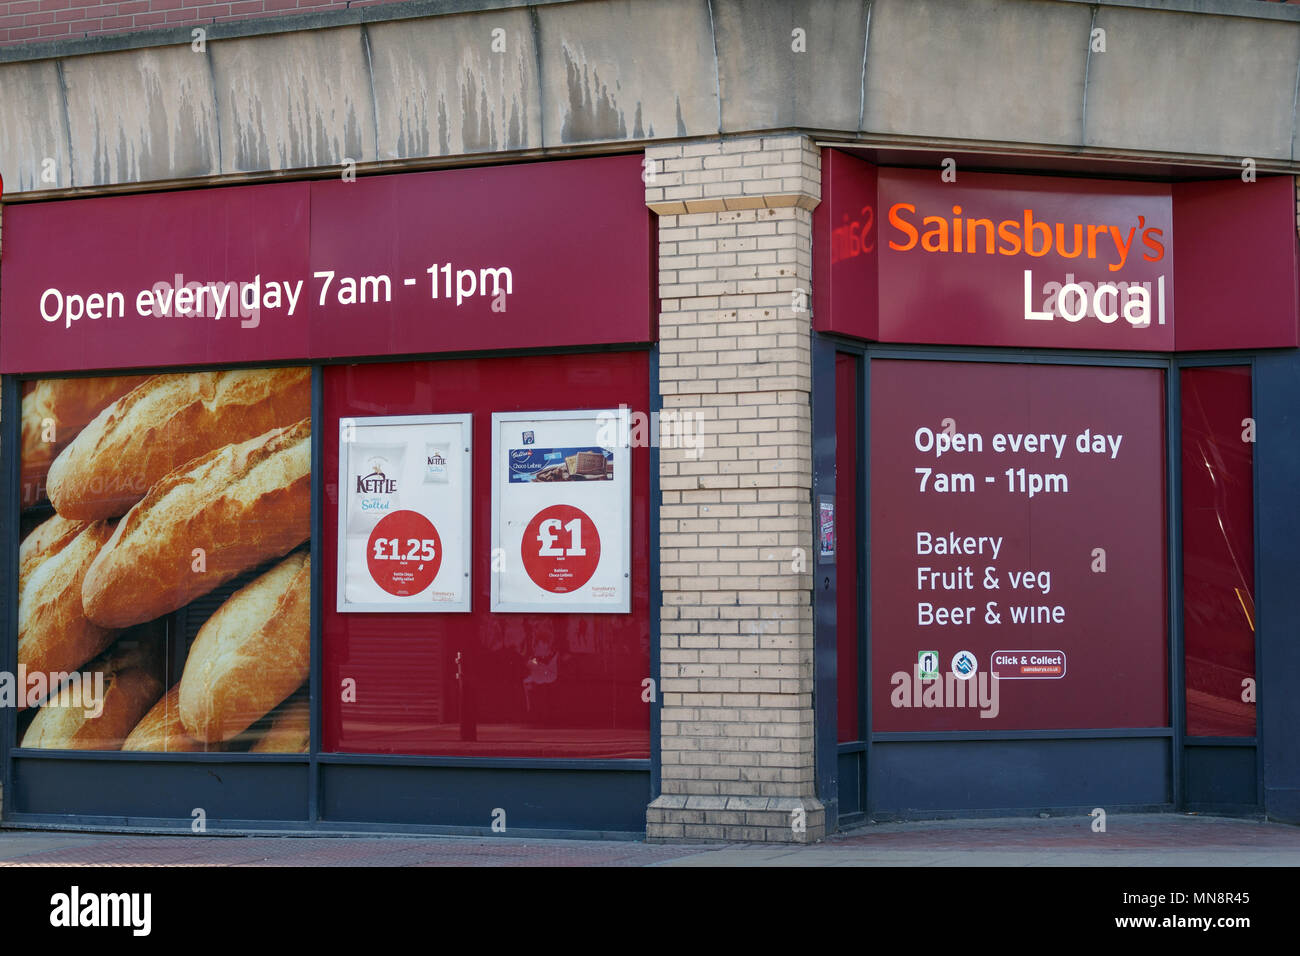 Ein Sainsbury Lokale in lokalen Logo das Vereinigte Königreich/Sainsbury's, Bequemlichkeit Sainsbury's speichern. Stockfoto